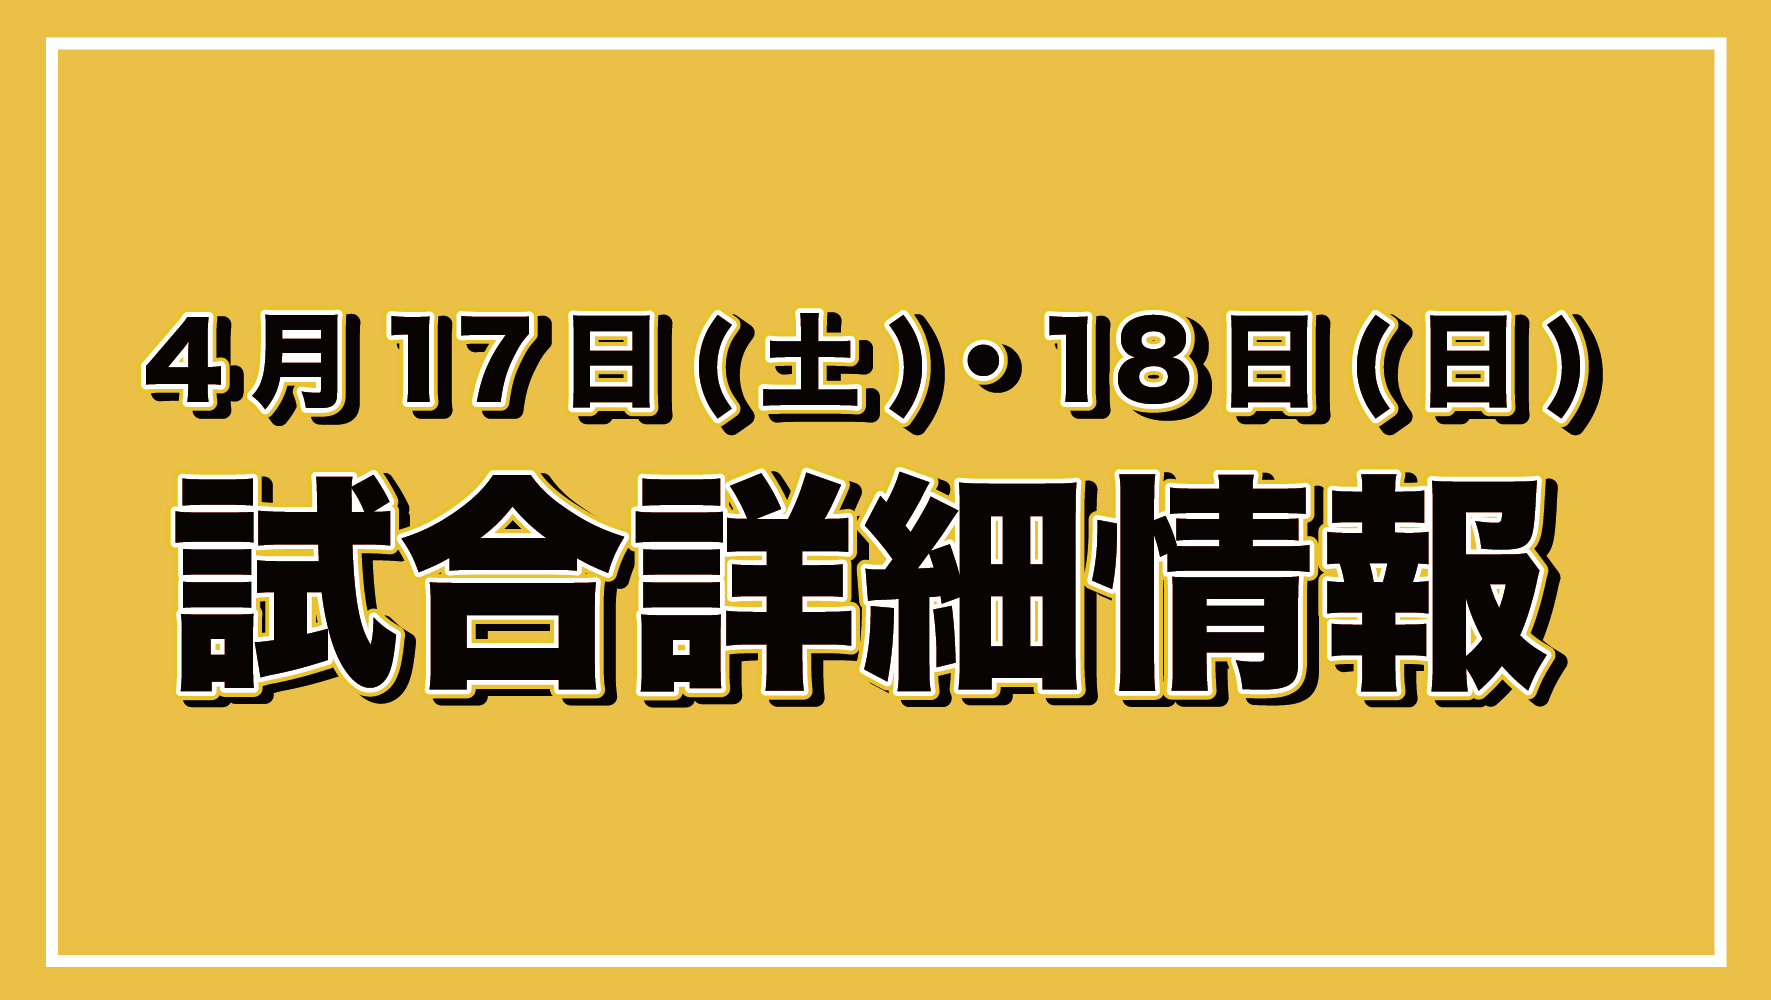 【4/17(土)・18(日)太田市】タイムスケジュール・試合イベント情報